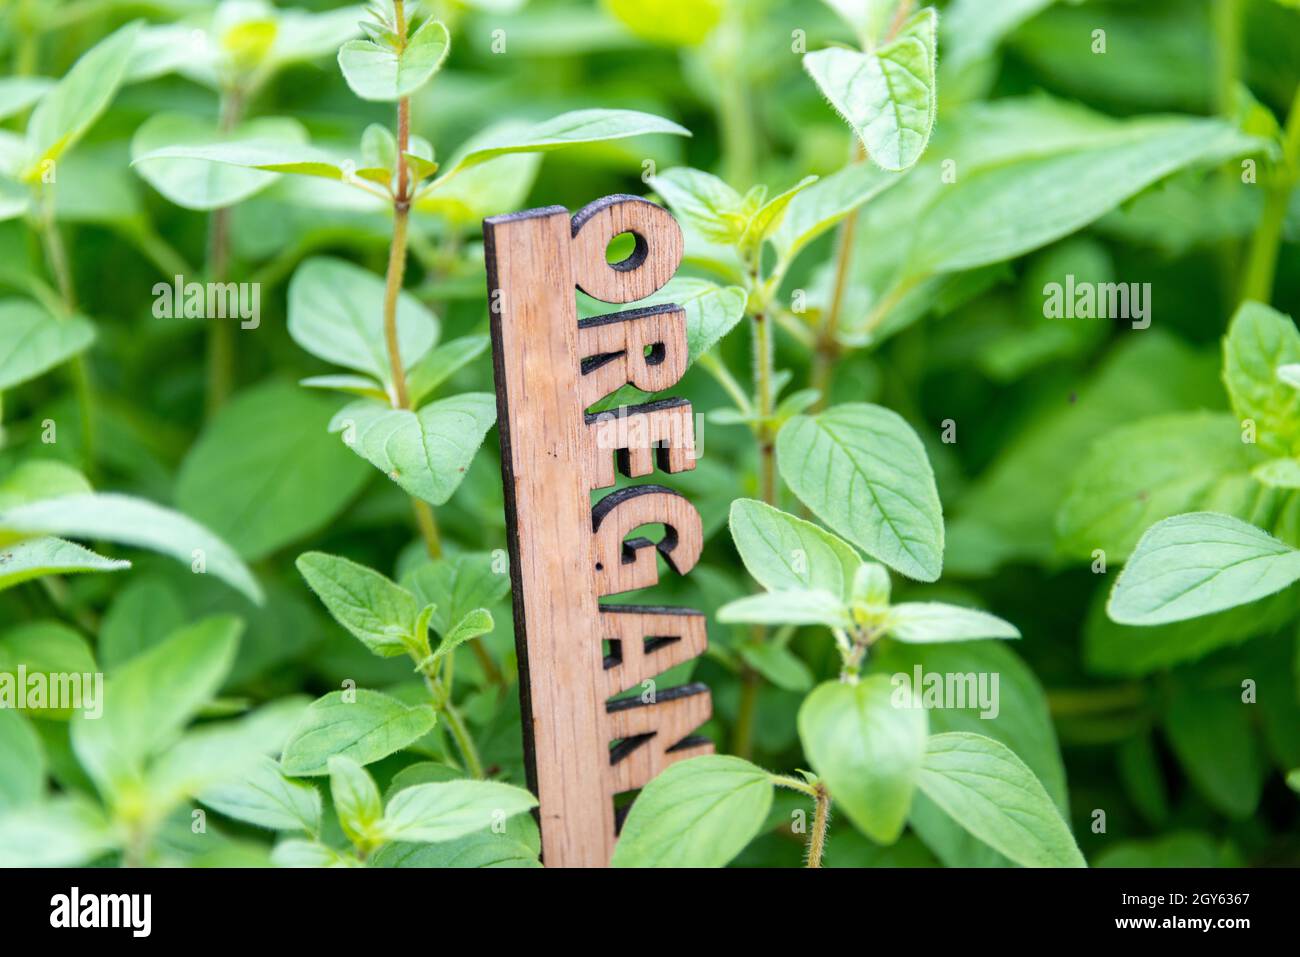 Ein urbaner Garten voller lebendiger grüner Oranganokräuter, die in einem kleinen Blumentopf wachsen. Es gibt einen Holzmarker mit den Buchstaben oregano in der Pflanze Stockfoto